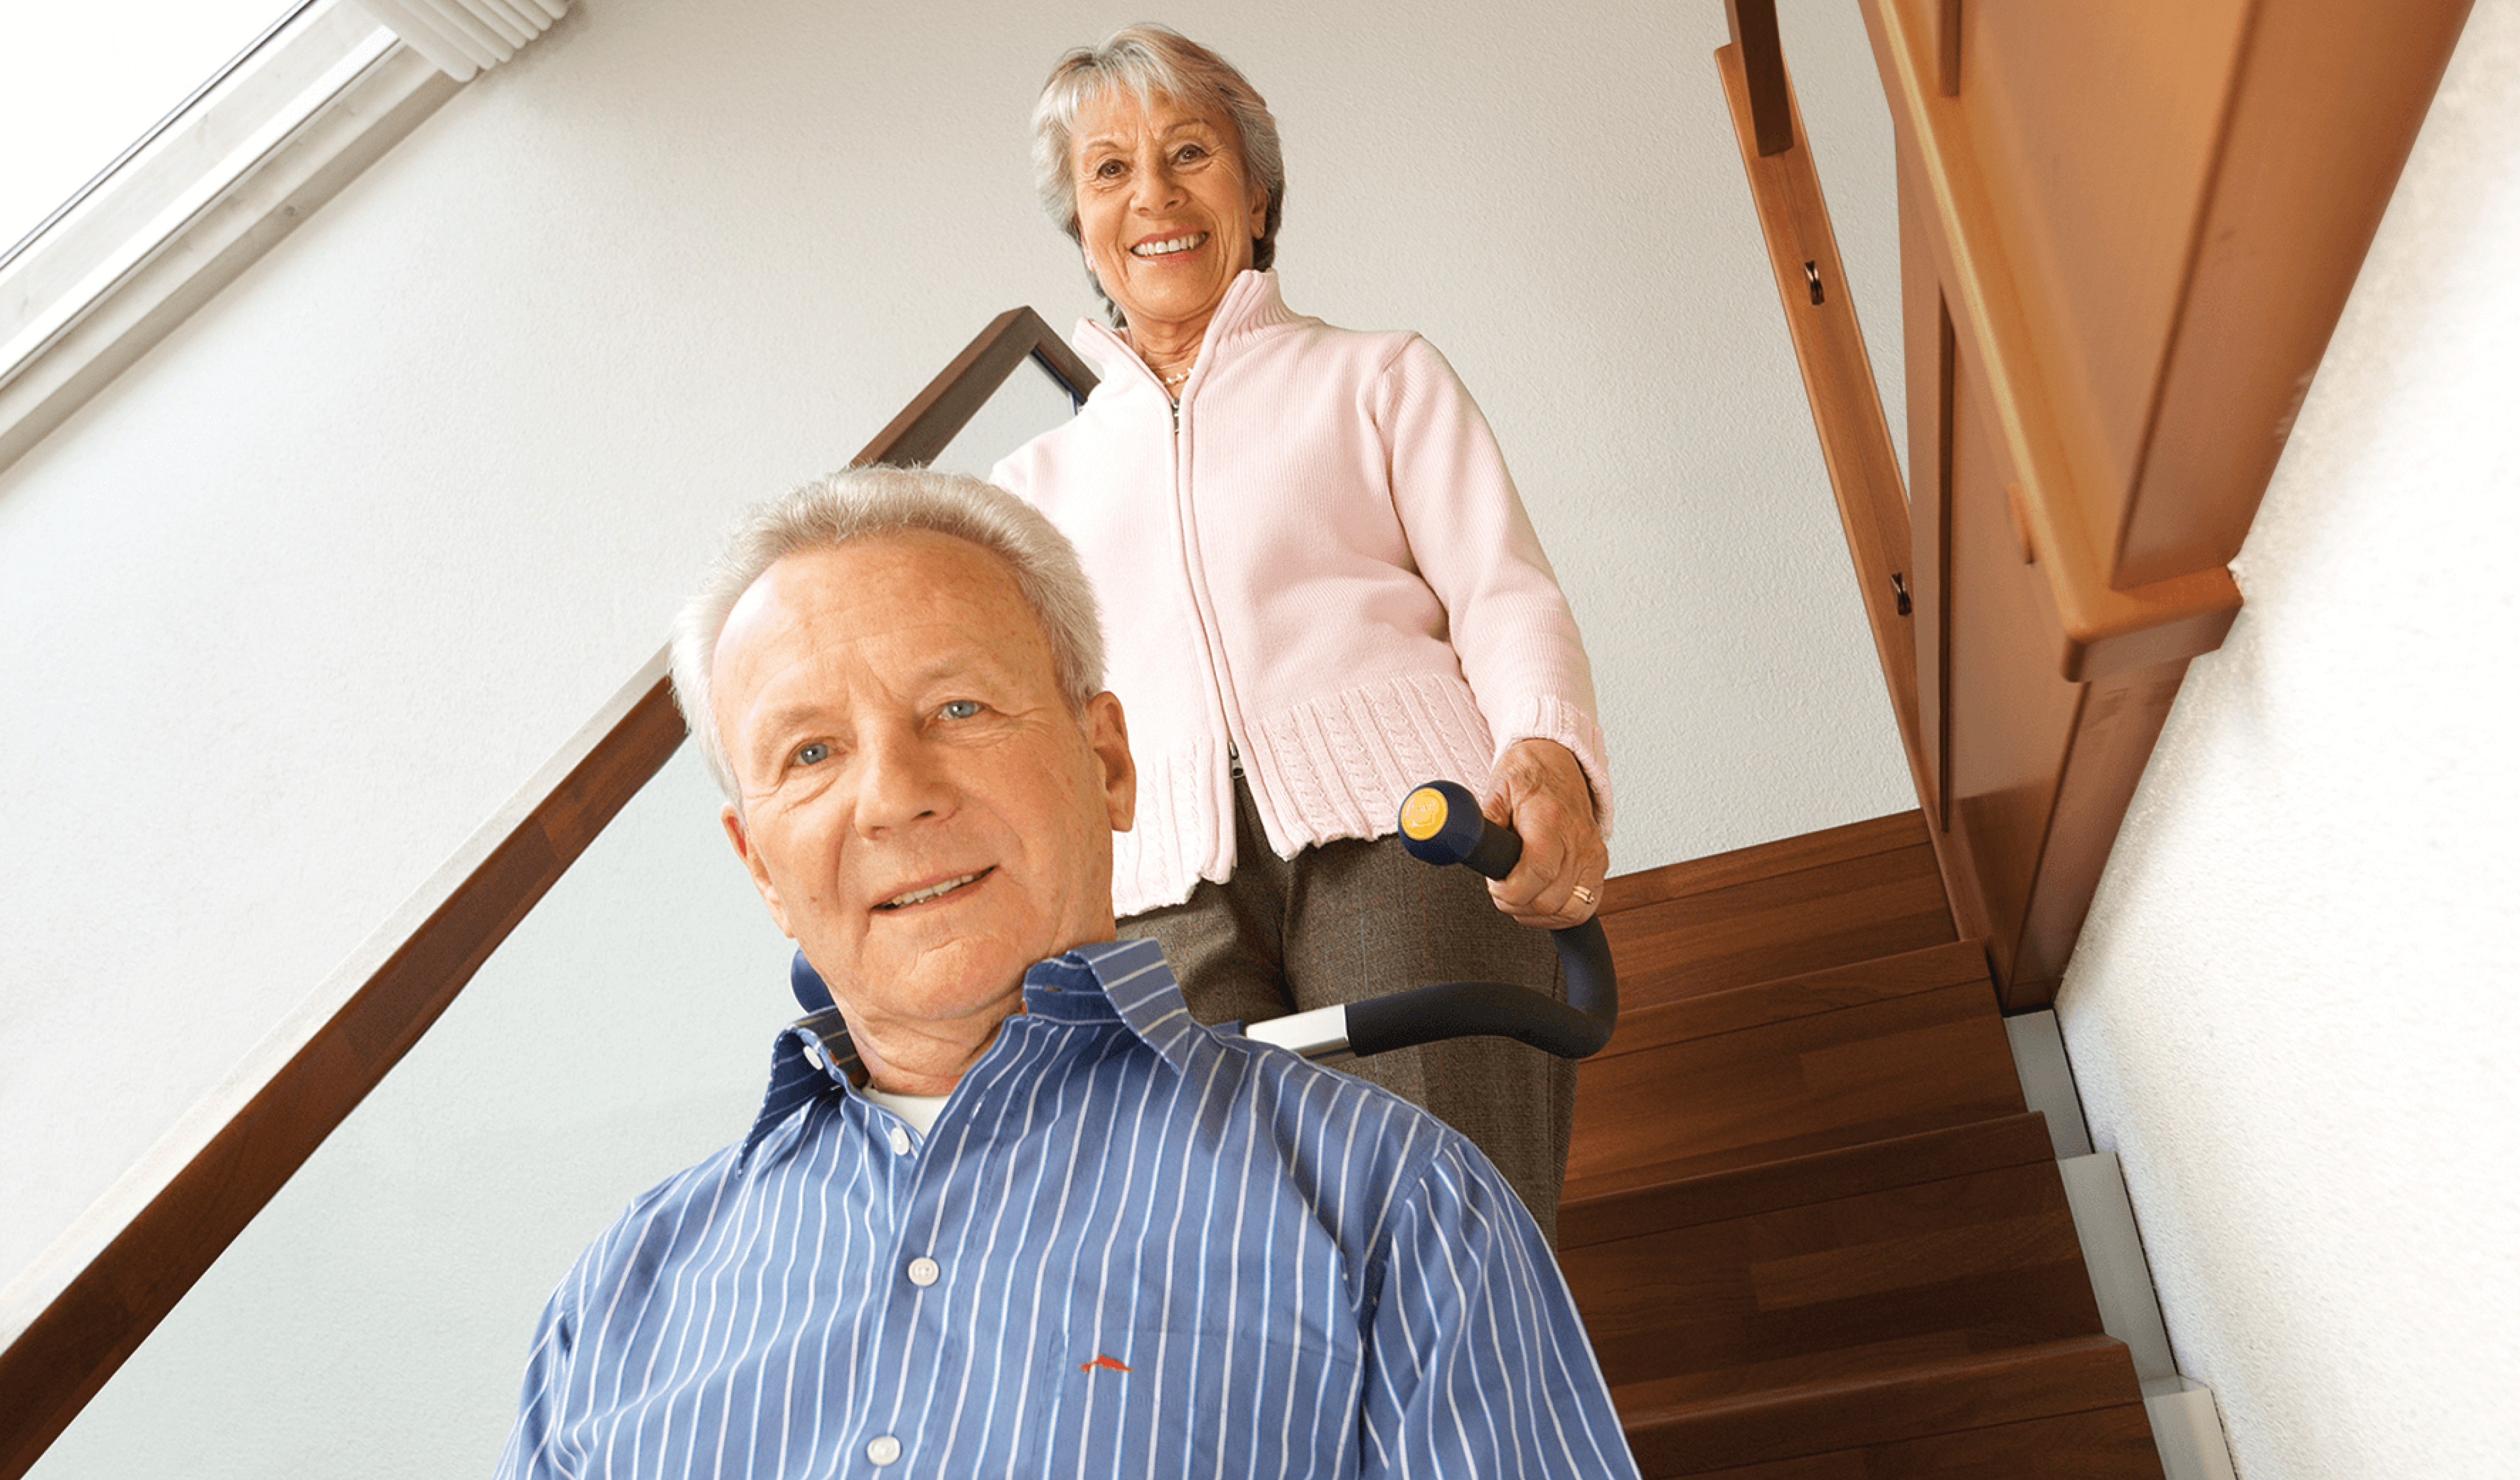 Das Bild zeigt einen Mann mittleren Alters, der von einer Frau in seinem Rollstuhl mithilfe eines Treppensteigers die Treppen hinaufbefördert wird. Beide lächeln in die Kamera.